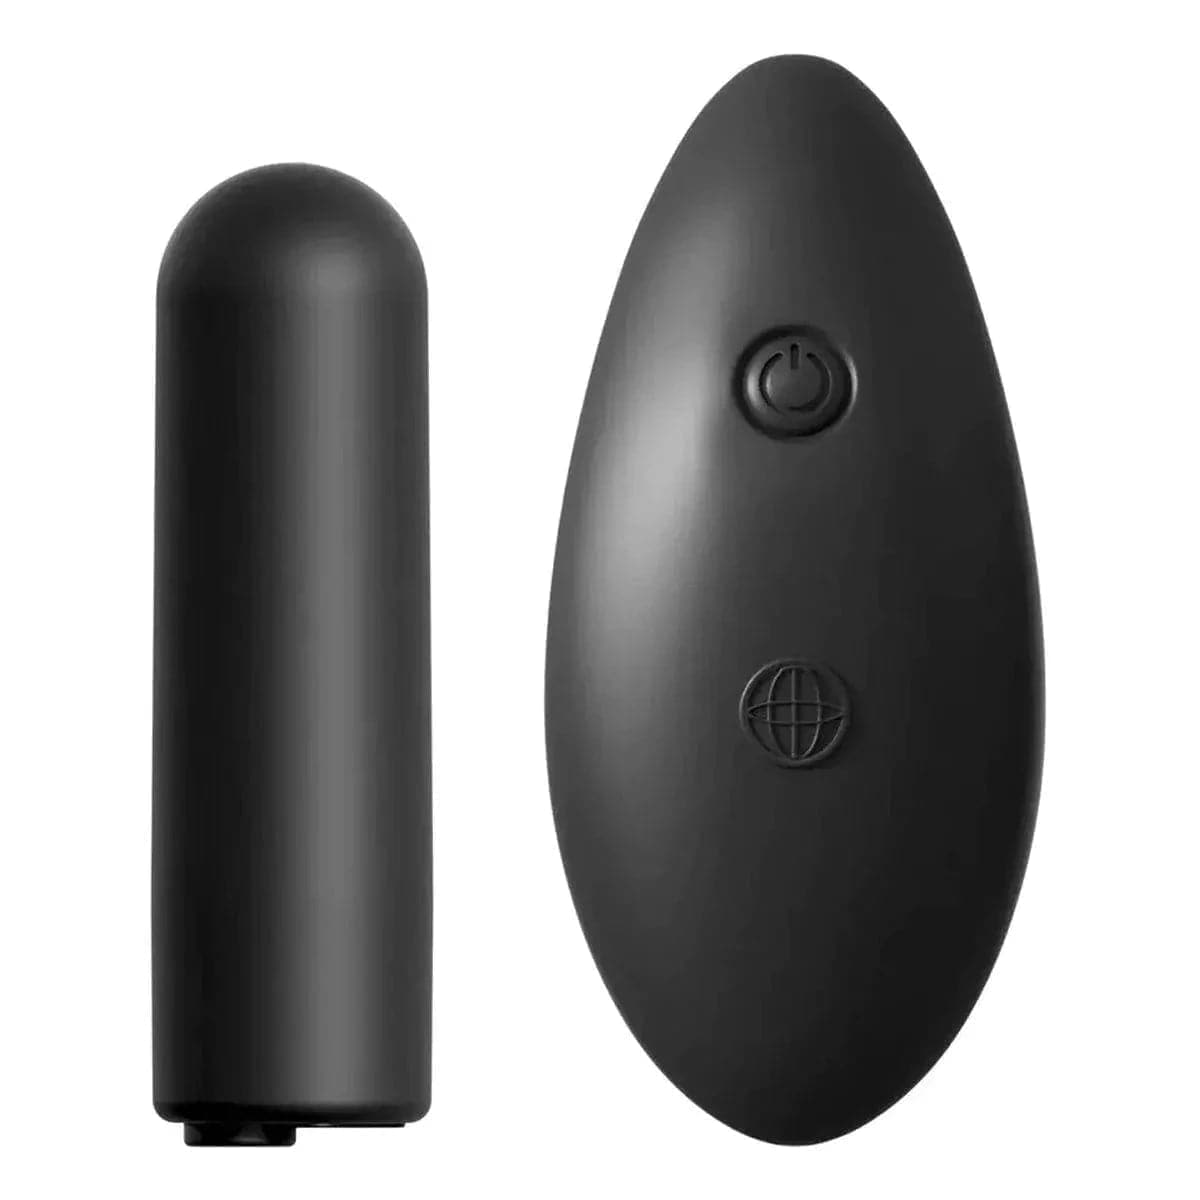 Cueca Vibratória Date Night USB Wireless - 10 Modos de Vibração, Tamanho S ao XL